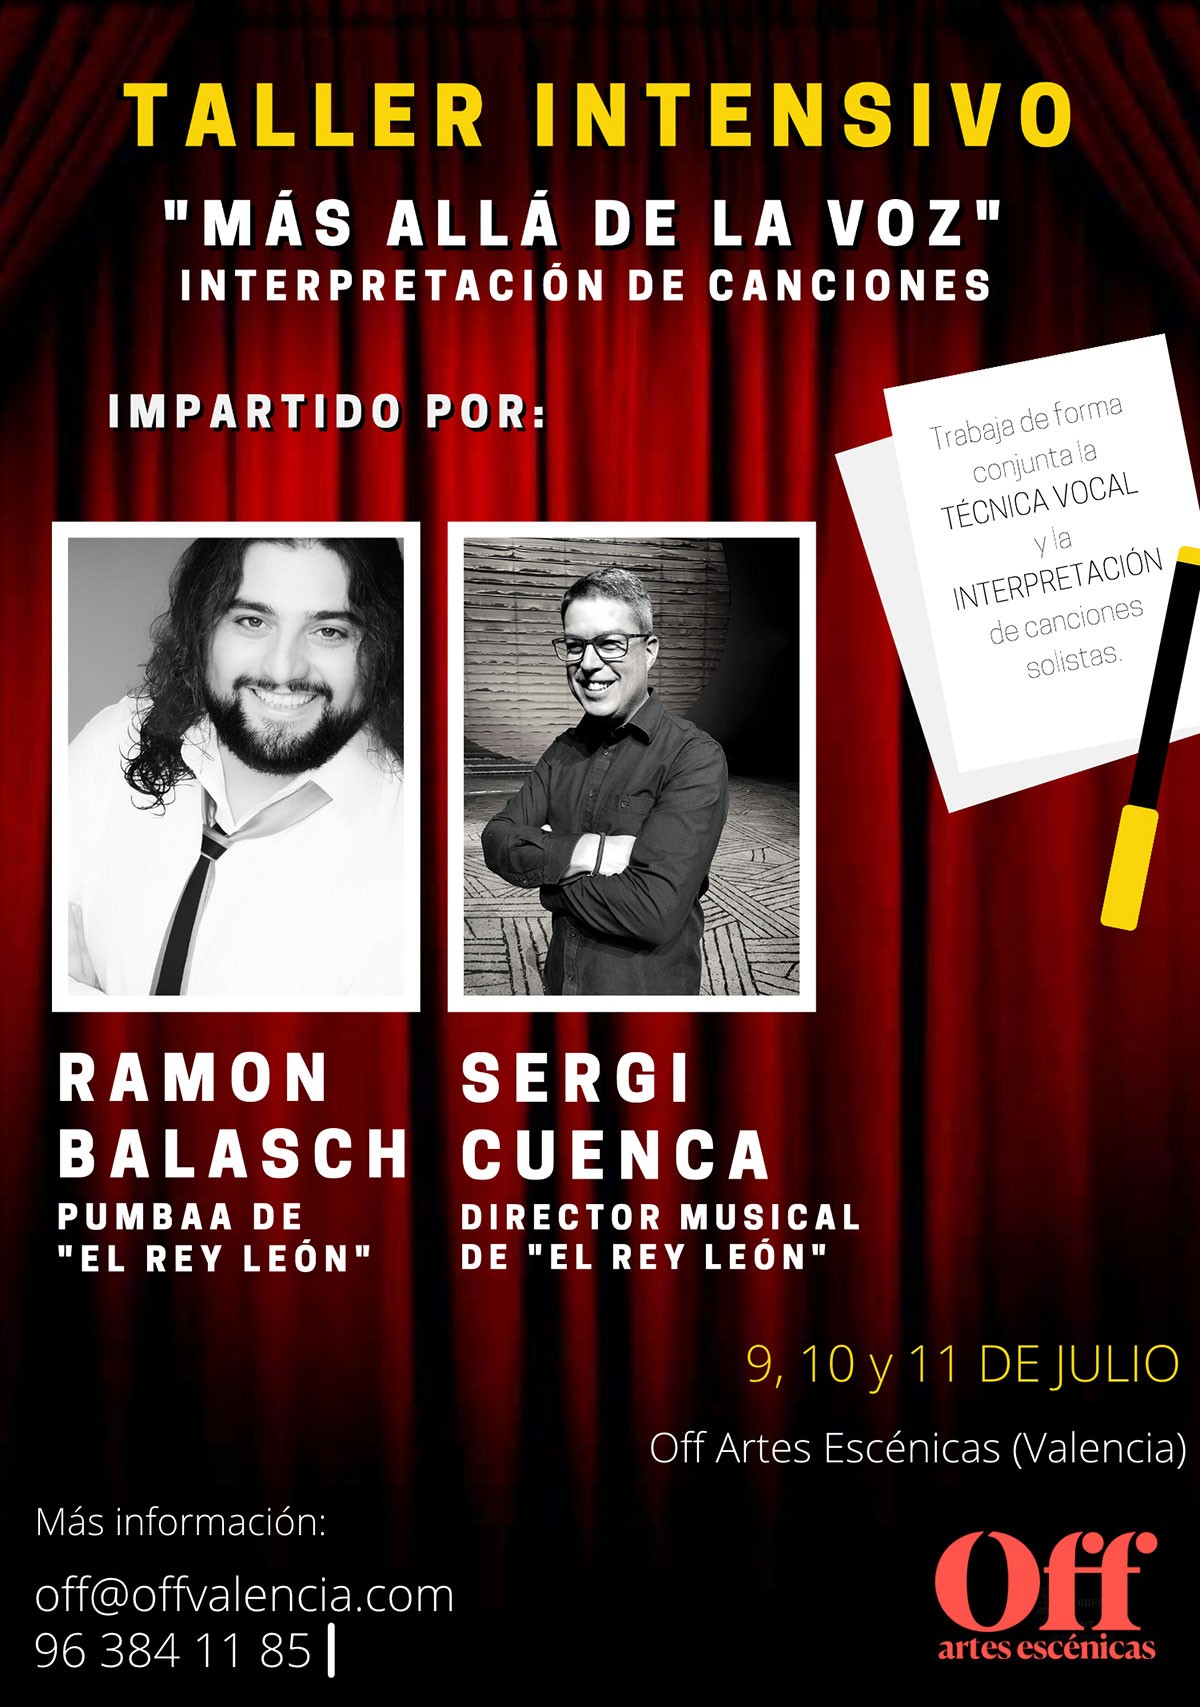 Taller ‘MÁS ALLÁ DE LA VOZ’ con Ramón Balasch y Sergi Cuenca